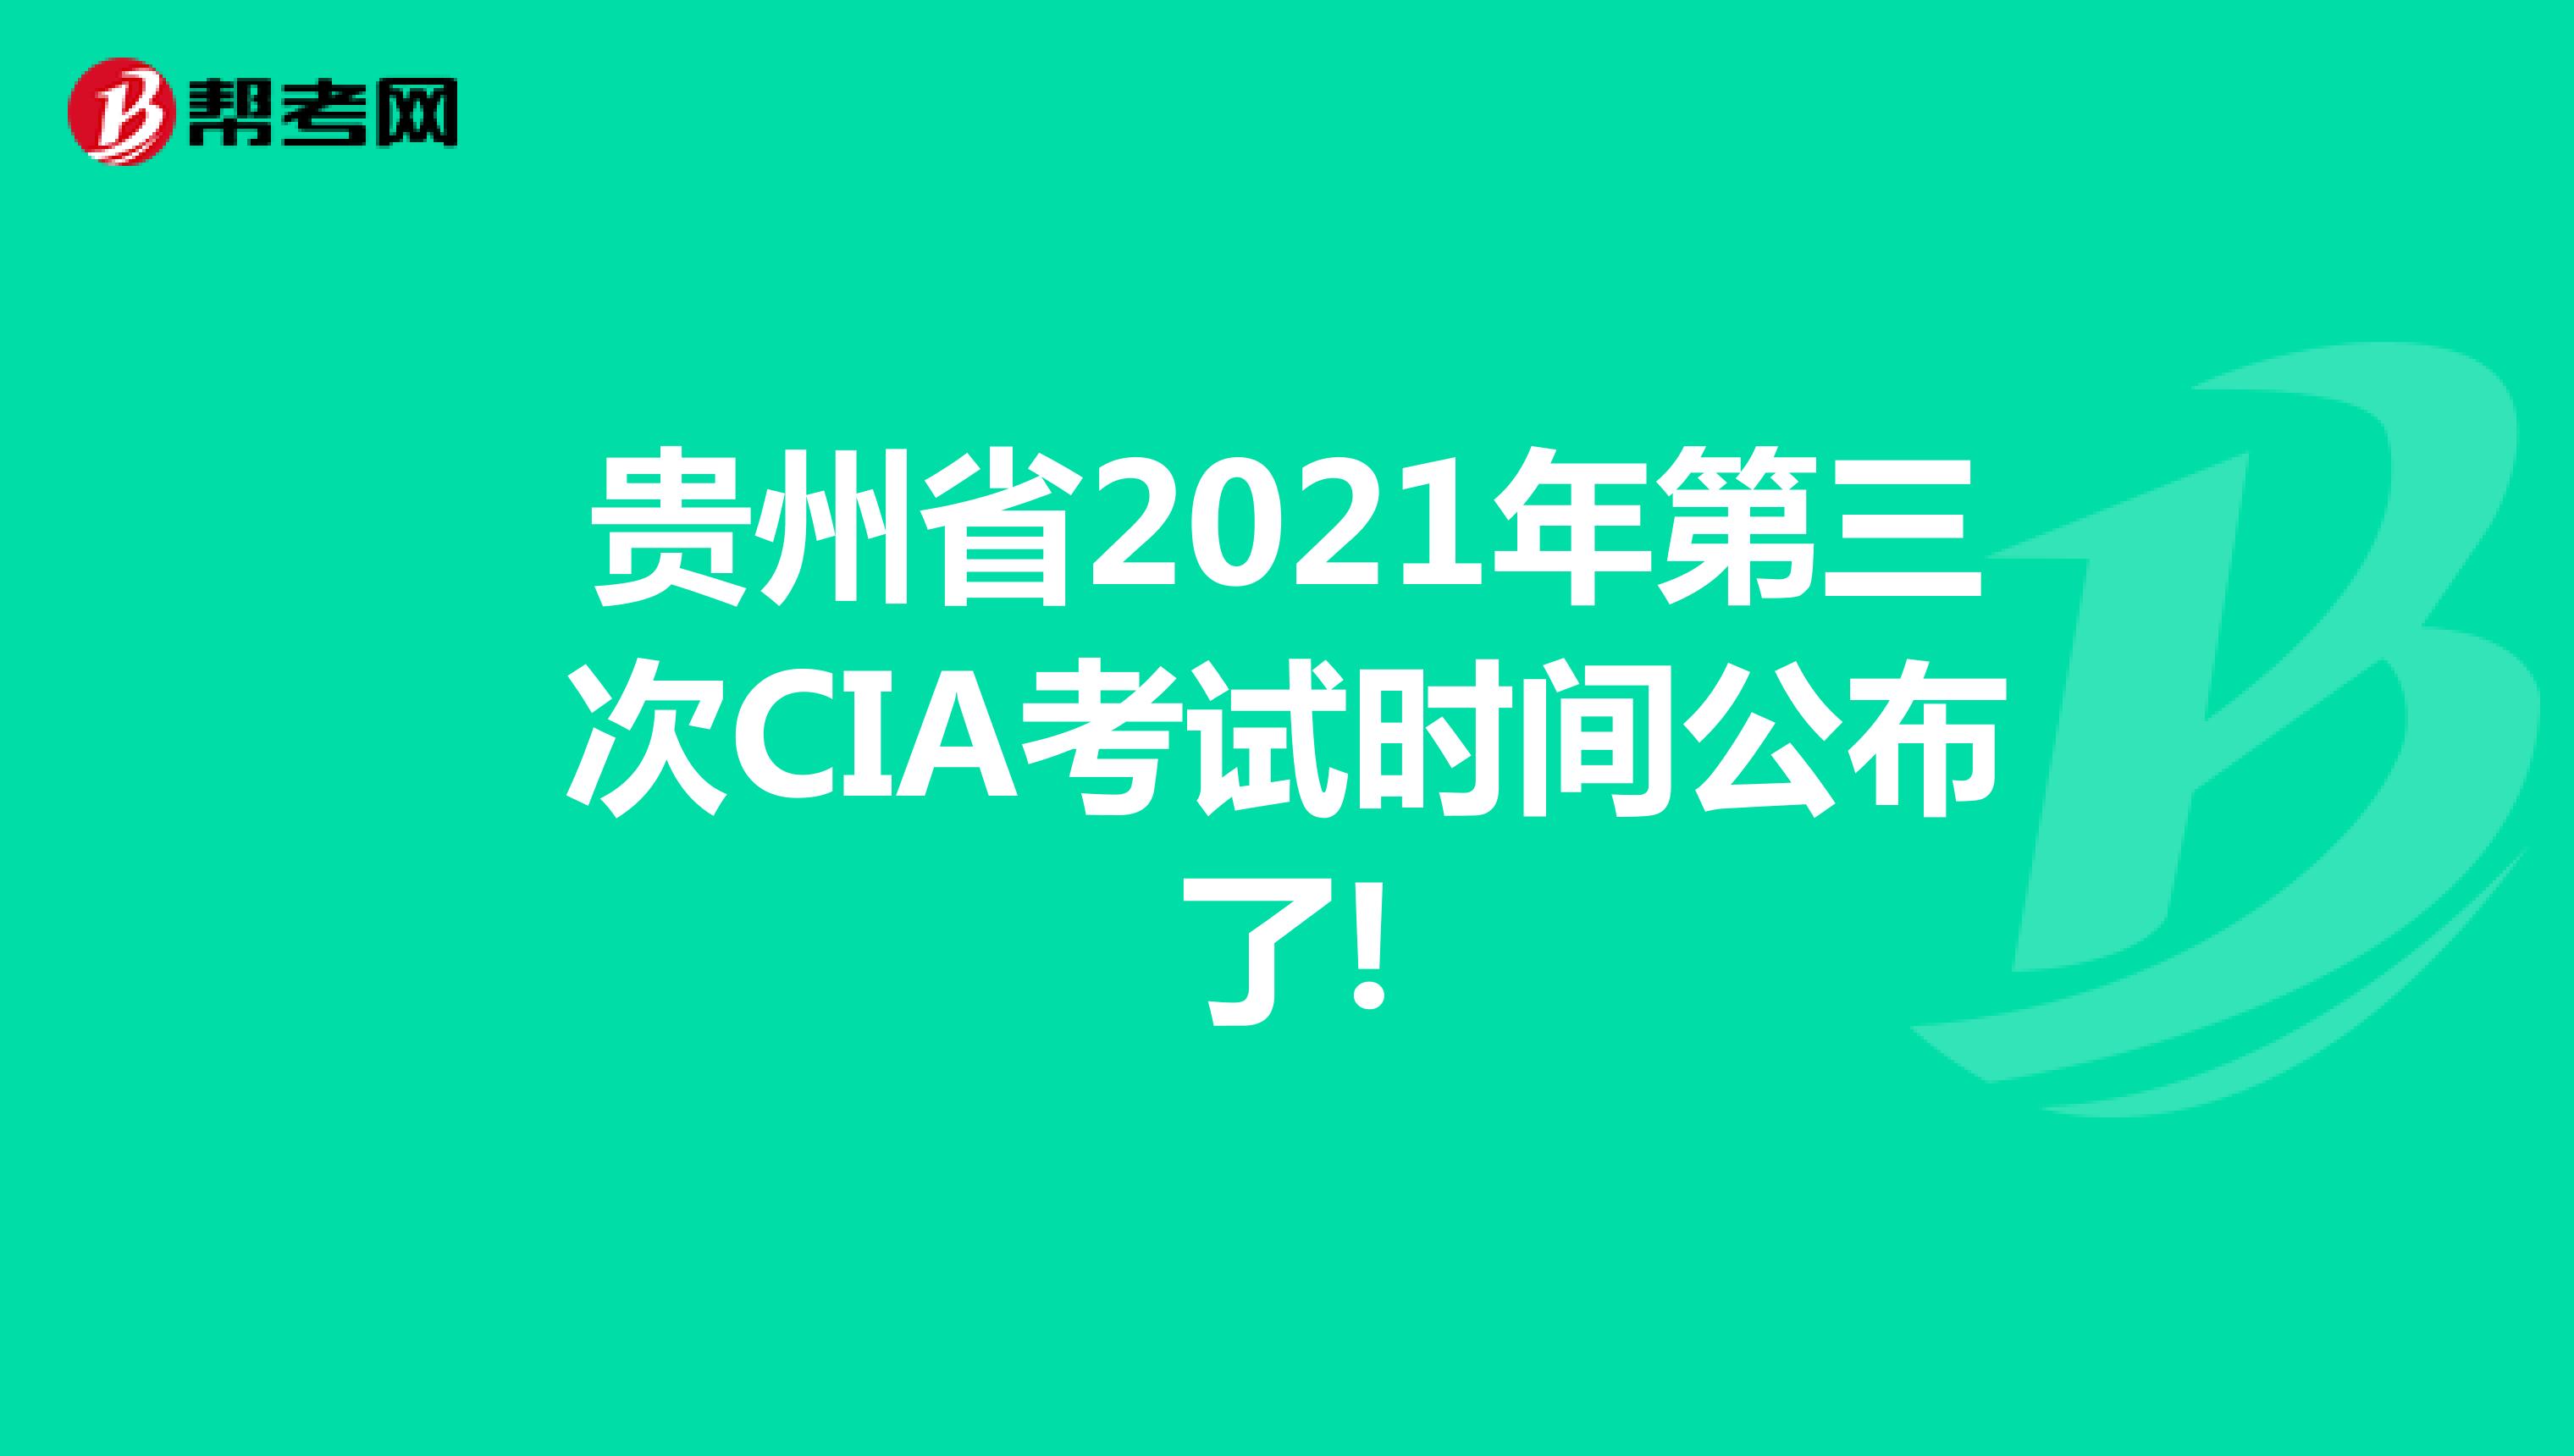 贵州省2021年第三次CIA考试时间公布了!